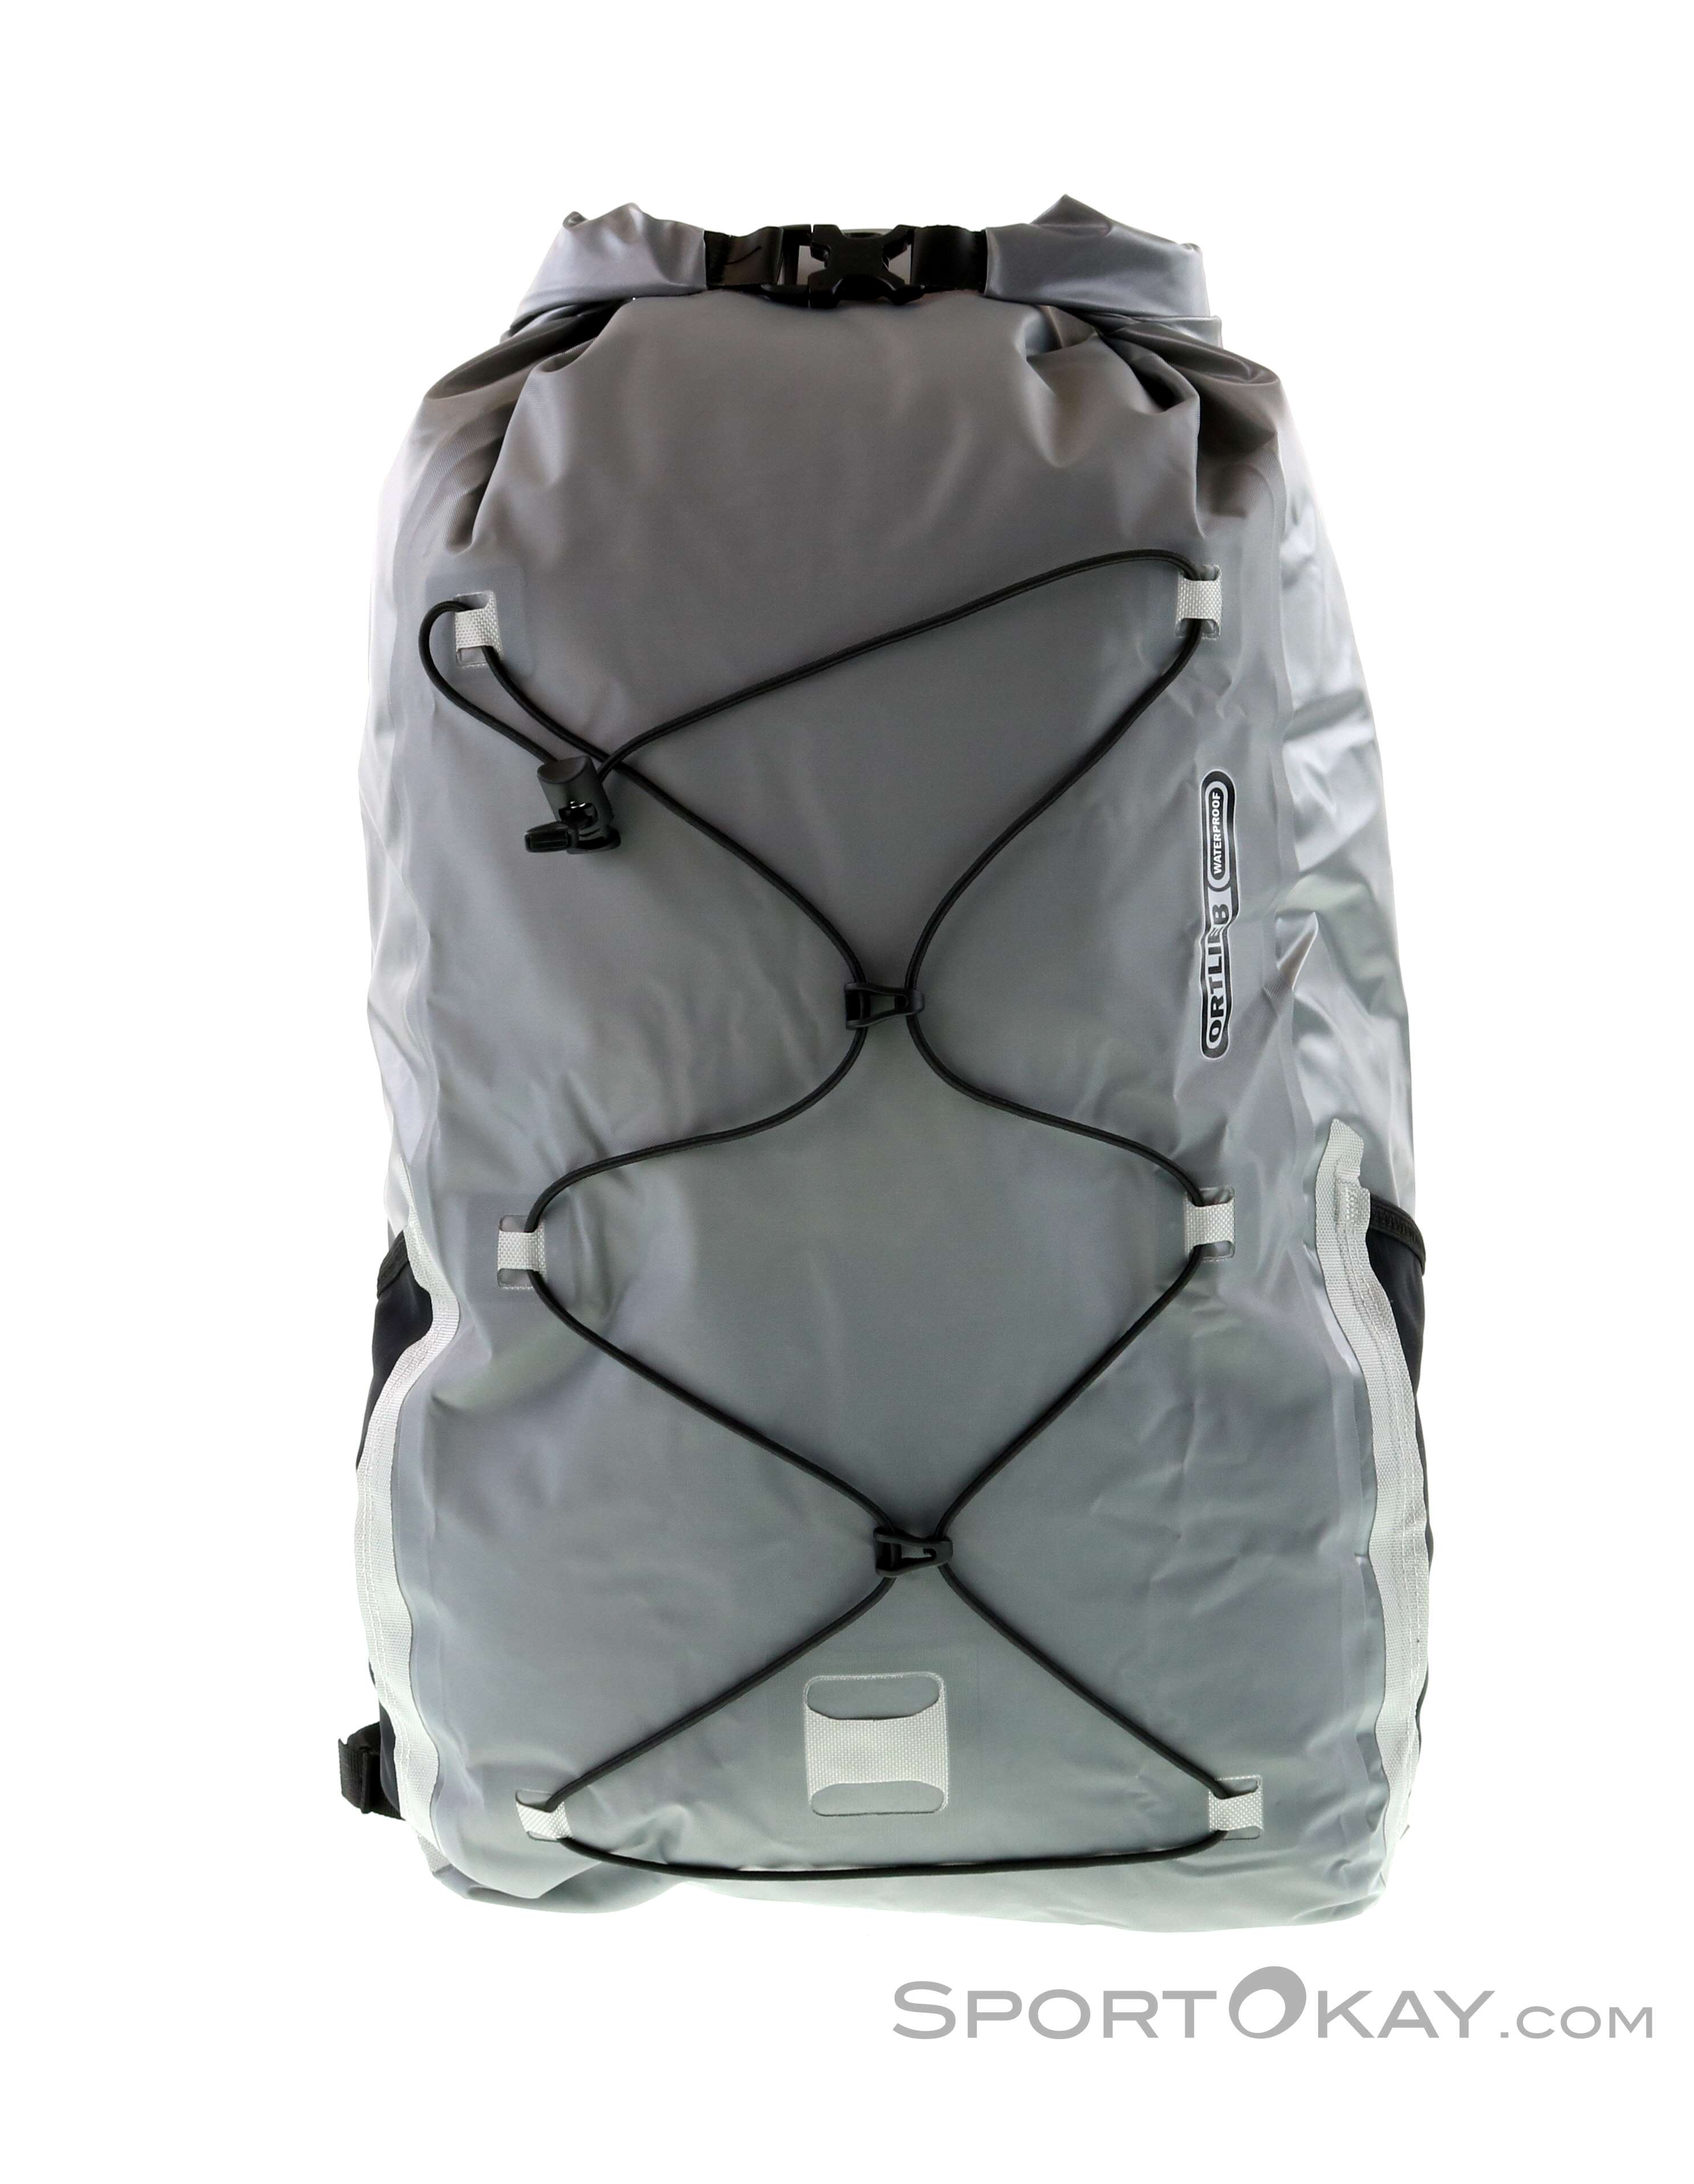 ortlieb waterproof backpack